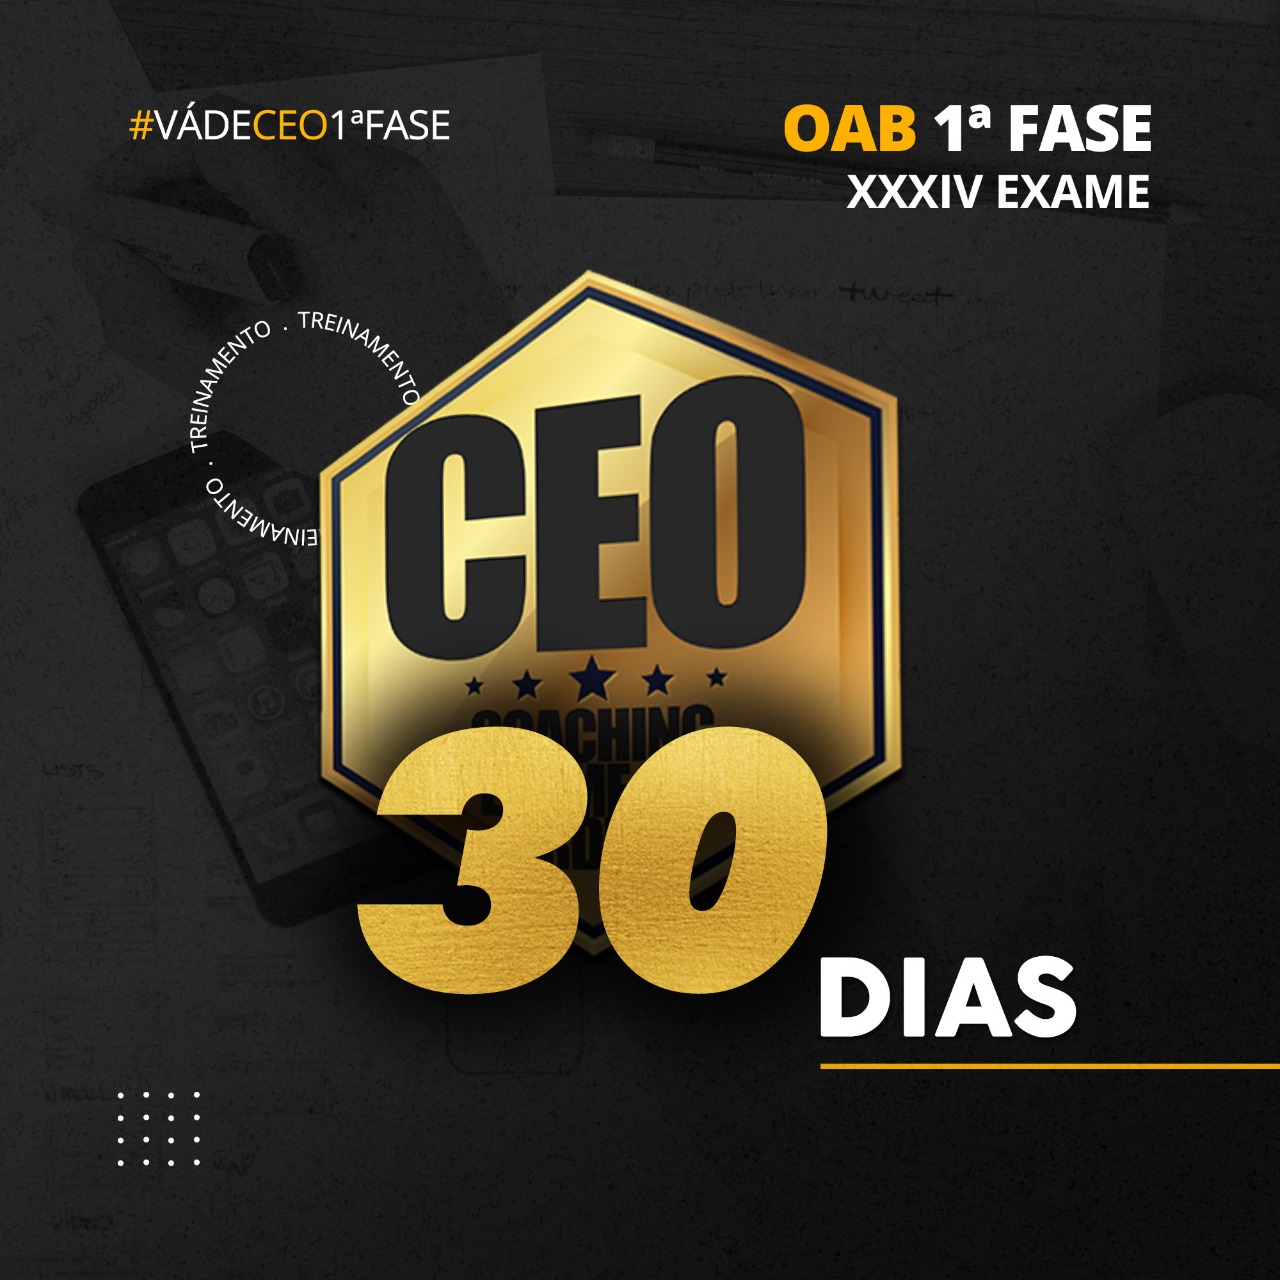 CEO 30 DIAS - XXXIV EXAME